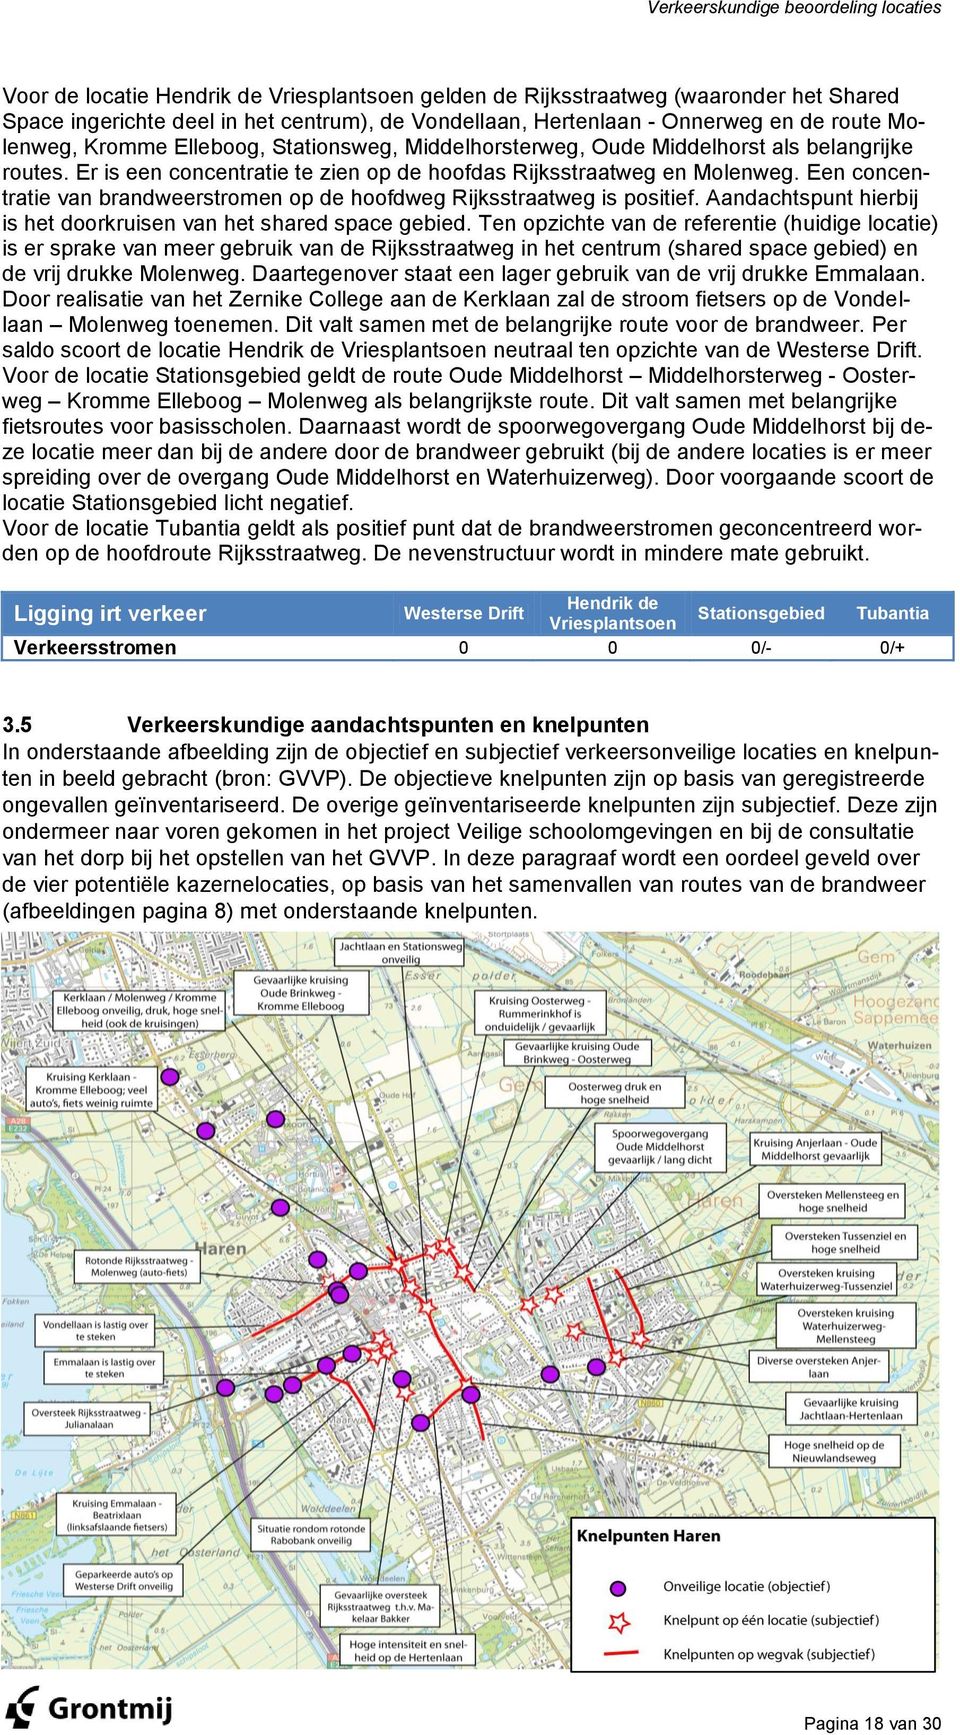 Een concentratie van brandweerstromen op de hoofdweg Rijksstraatweg is positief. Aandachtspunt hierbij is het doorkruisen van het shared space gebied.